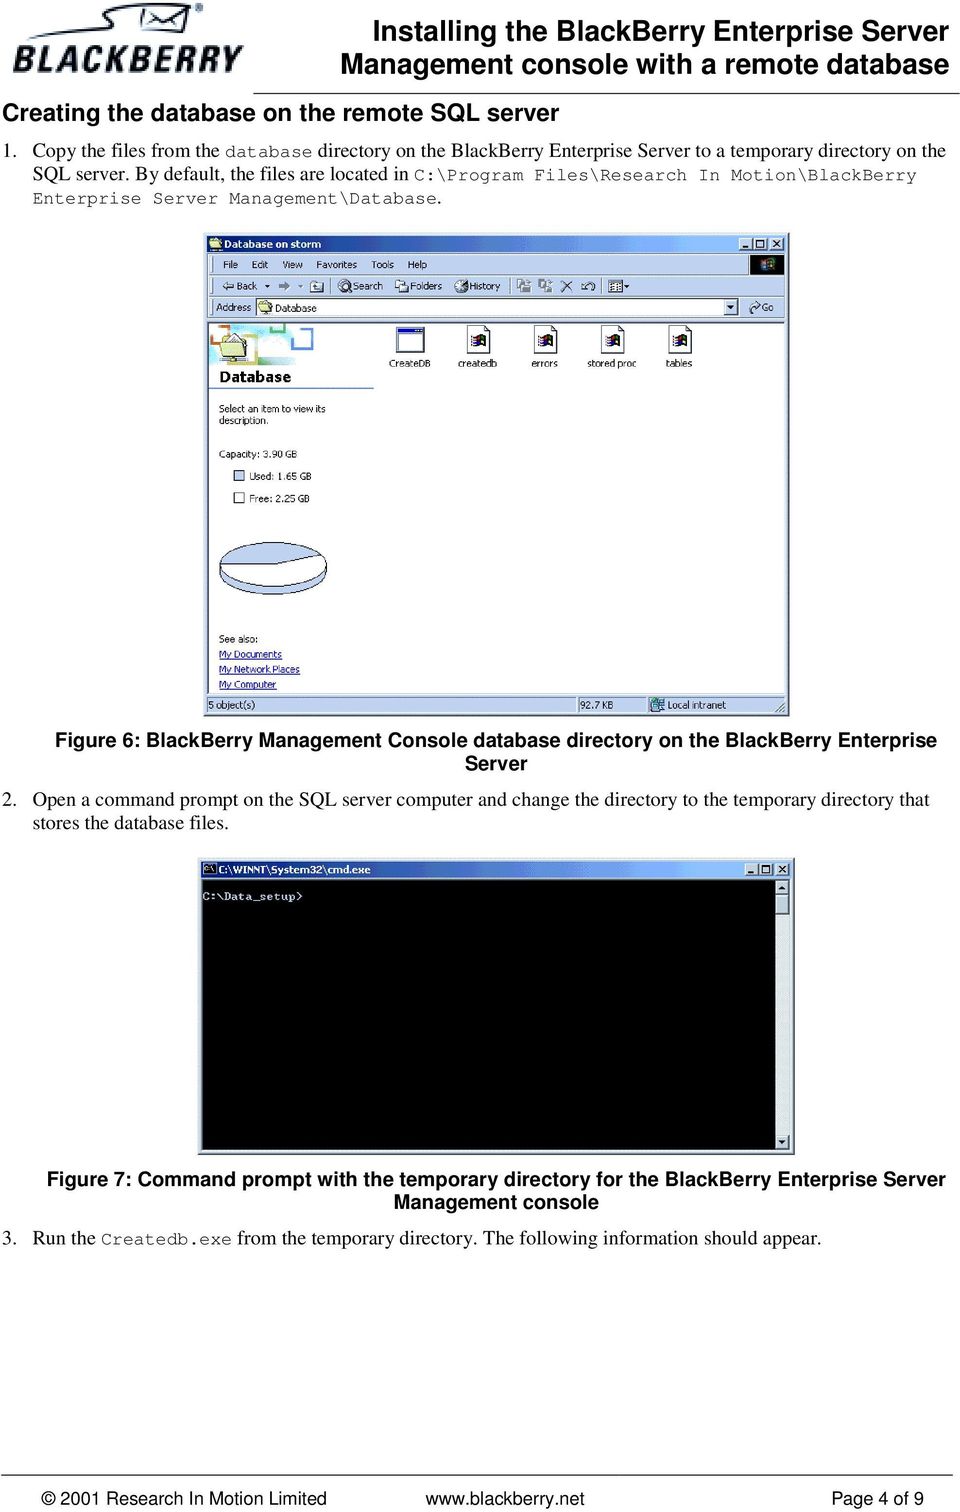 Blackberry Enterprise Server Records Error